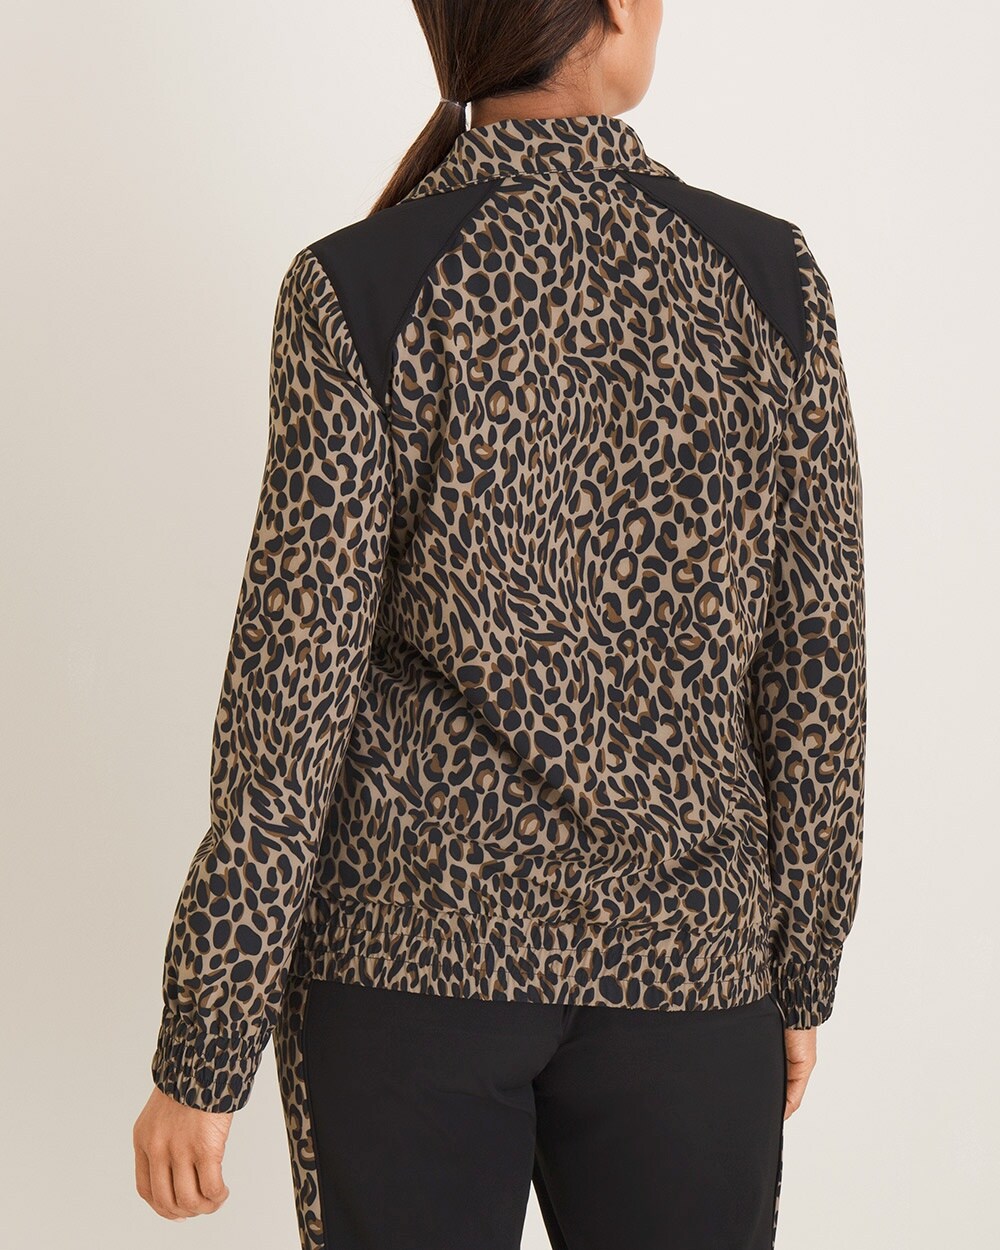 Zenergy Cheetah-Print Jacket - Chico's